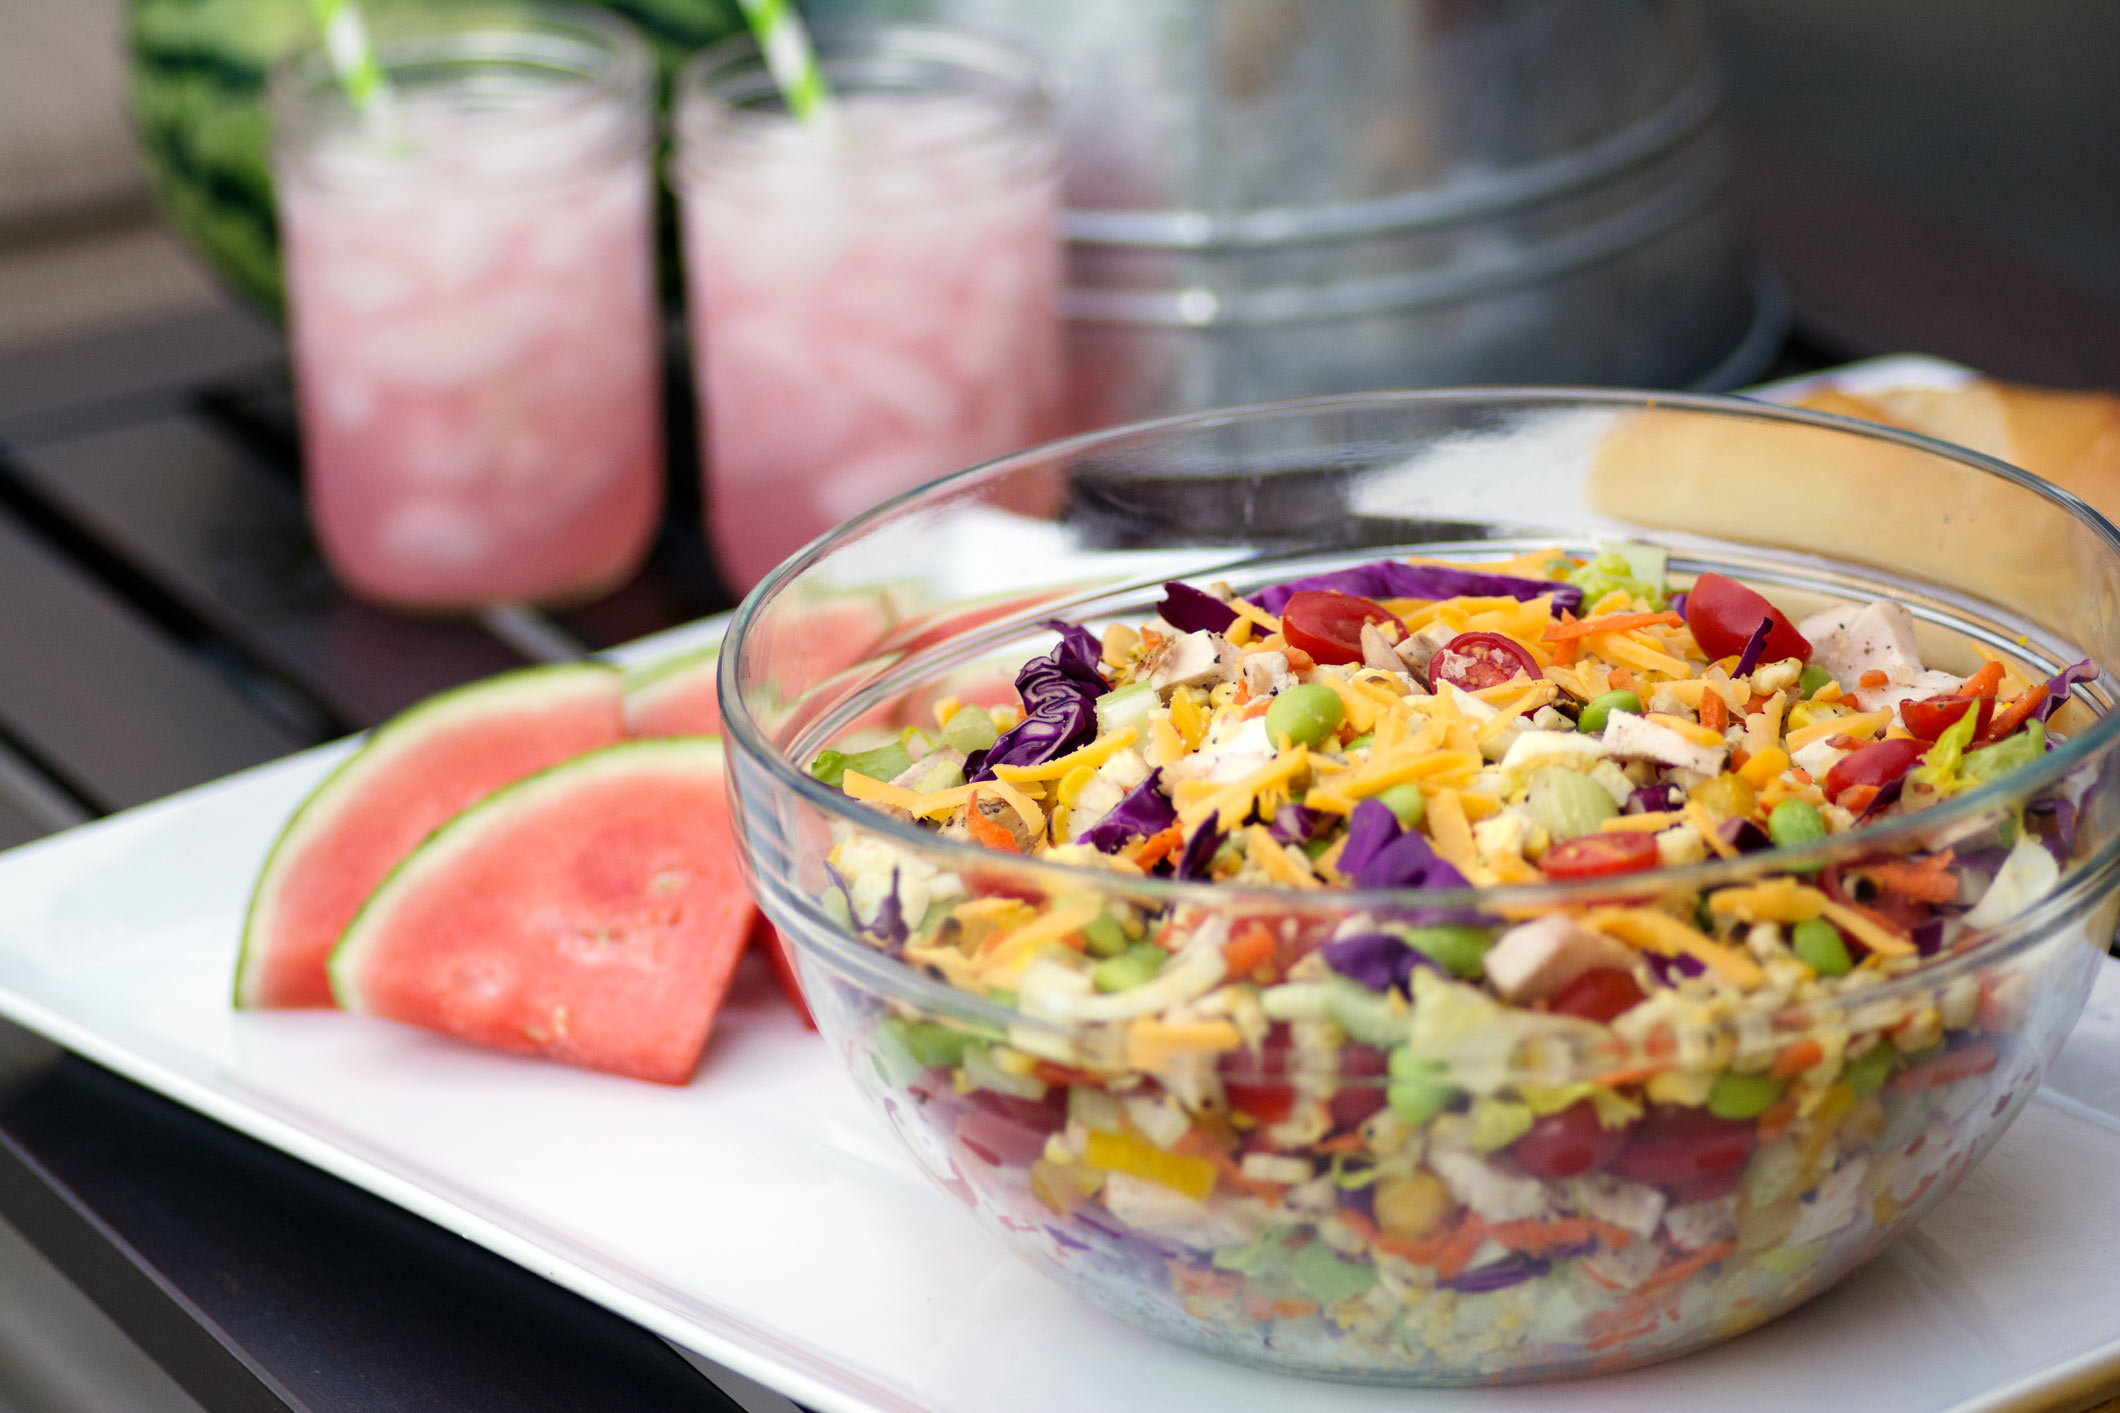 Dieta cu salată te ajută să slăbeşti rapid. Cum prepari salate gustoase cu puține calorii